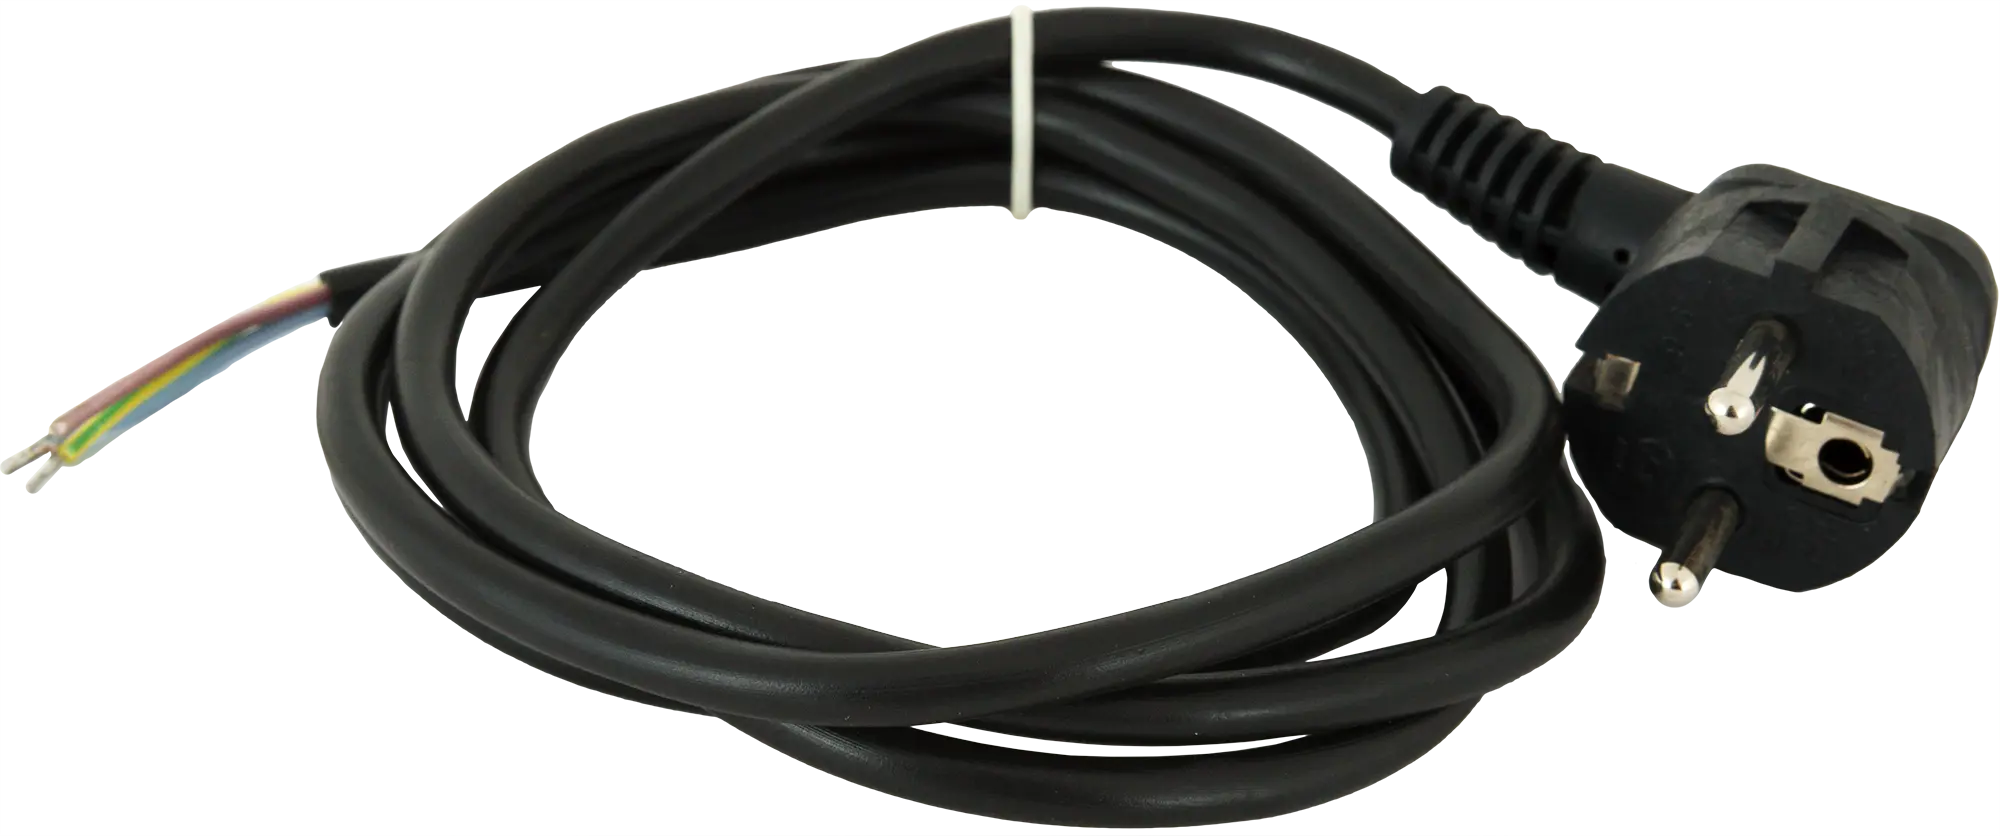 Шнур сетевой с заземлением 16 A 1.5 м цвет чёрный шнур сетевой с ножным выключателем чёрный 3 5 м